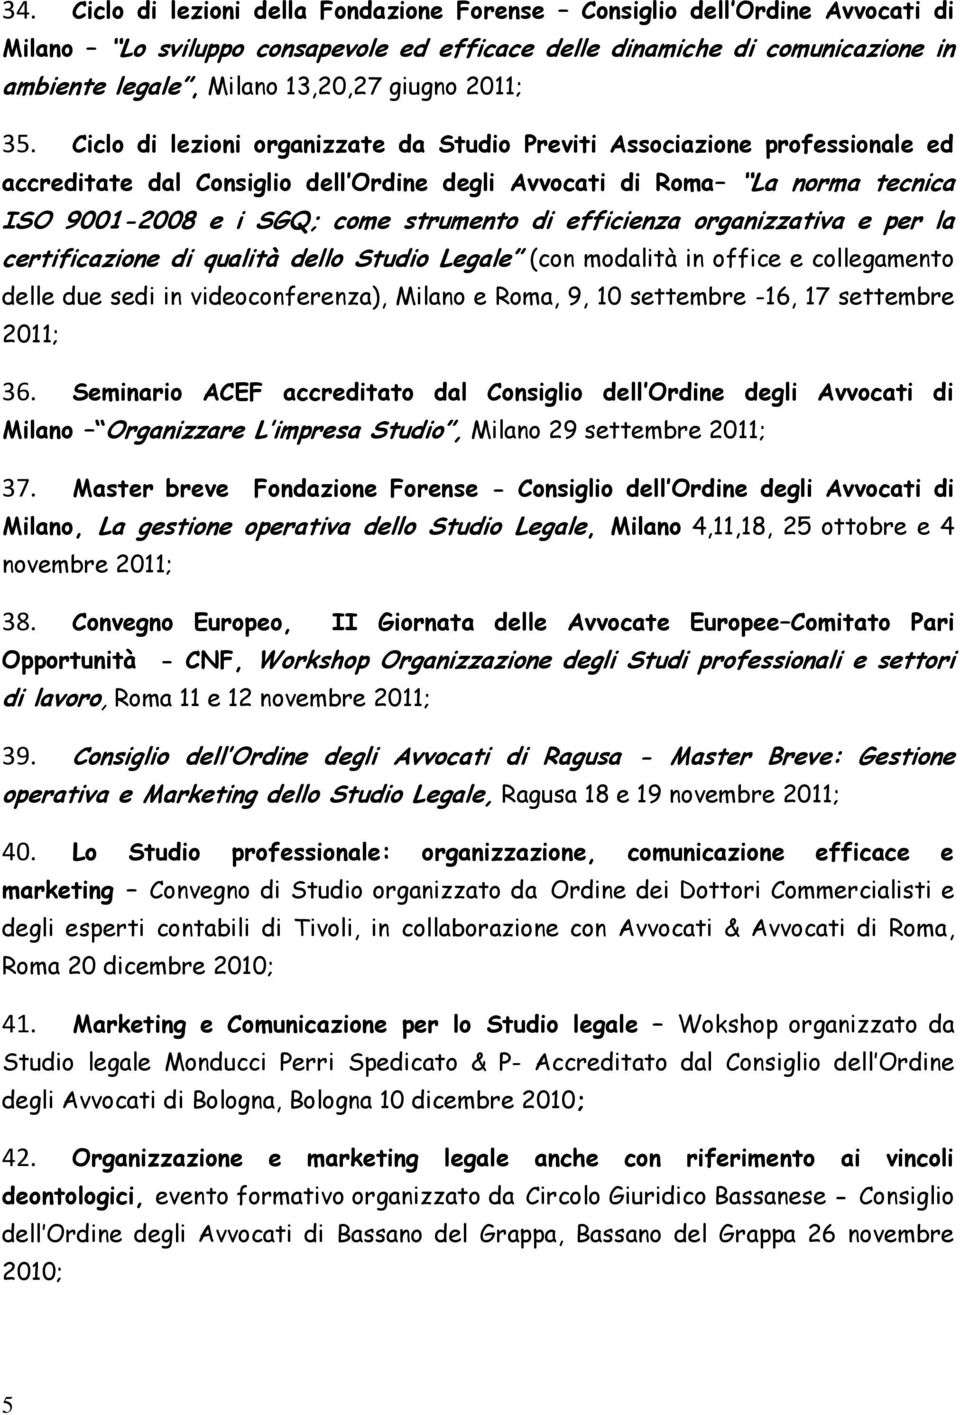 Ciclo di lezioni organizzate da Studio Previti Associazione professionale ed accreditate dal Consiglio dell Ordine degli Avvocati di Roma La norma tecnica ISO 9001-2008 e i SGQ; come strumento di